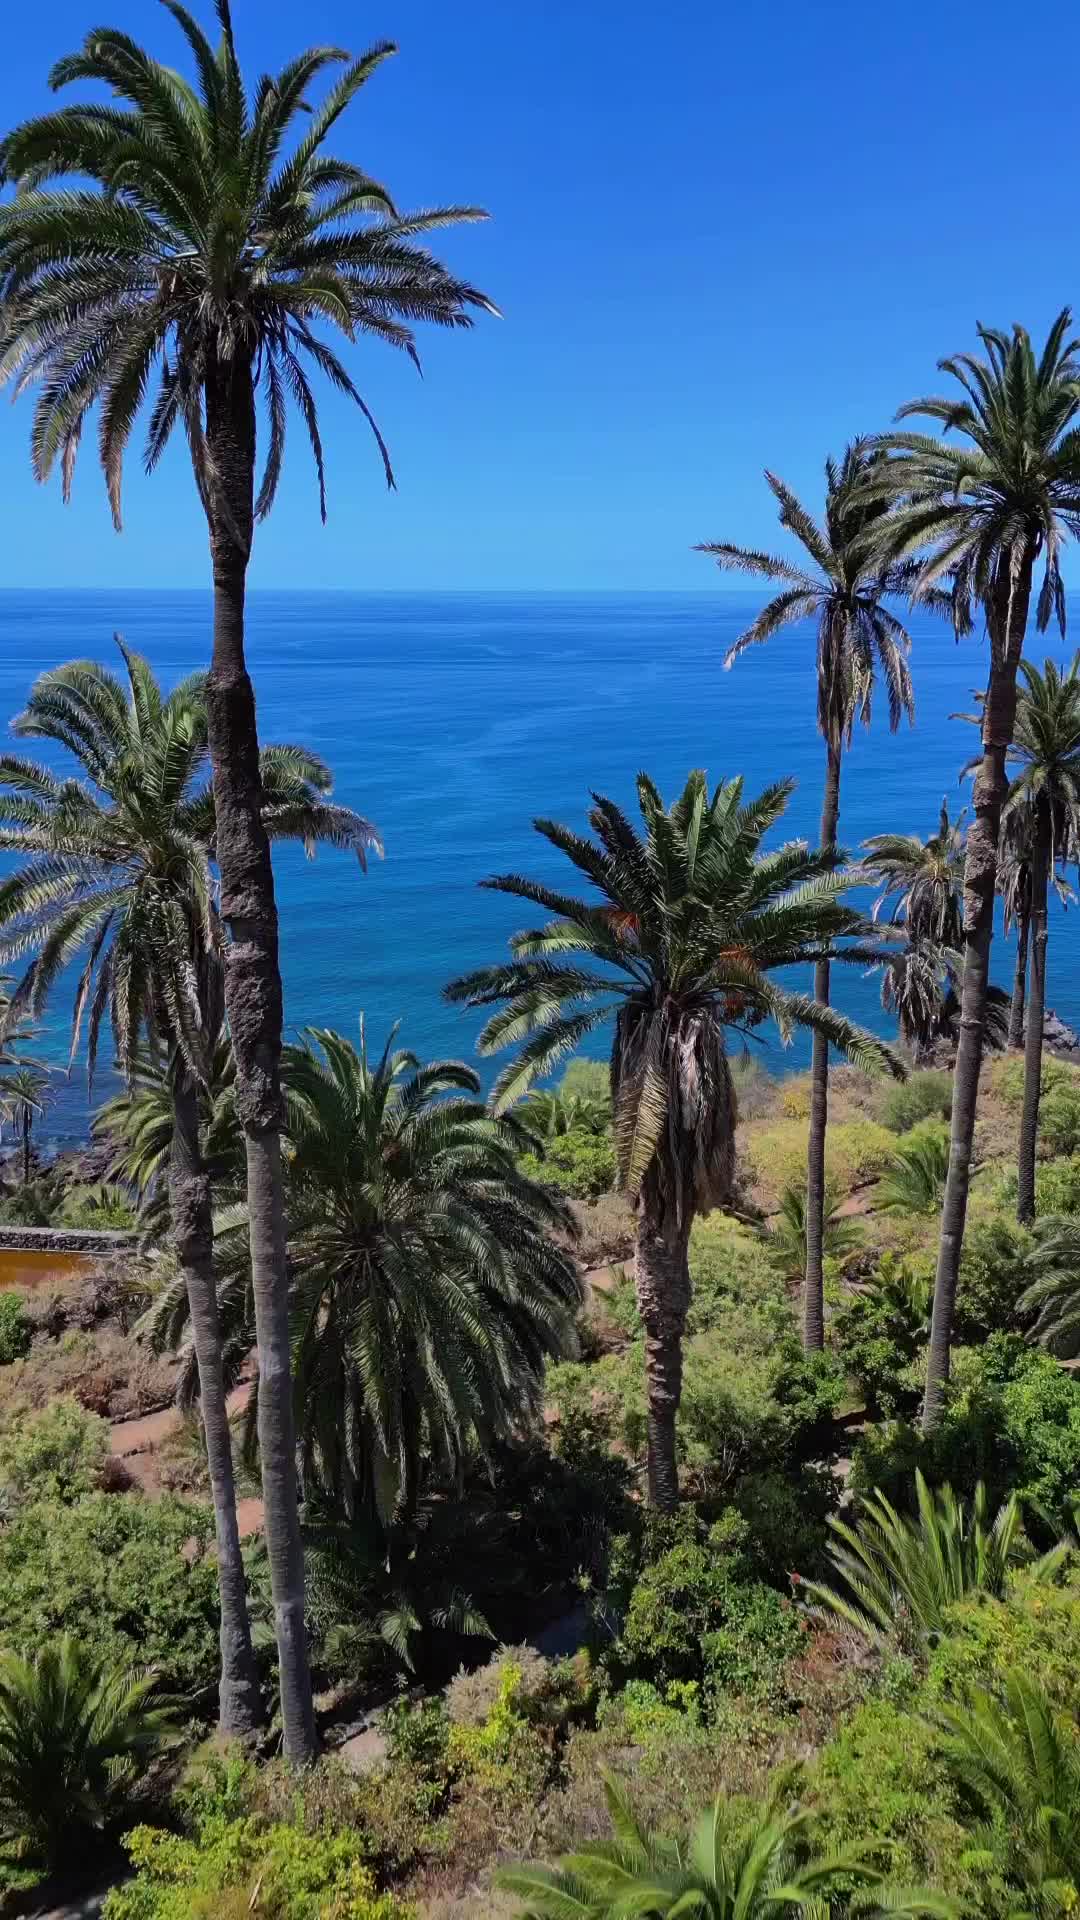 Swaying Paradise 🌴🌴
#Tenerife #CanaryIslands #reeloftheday